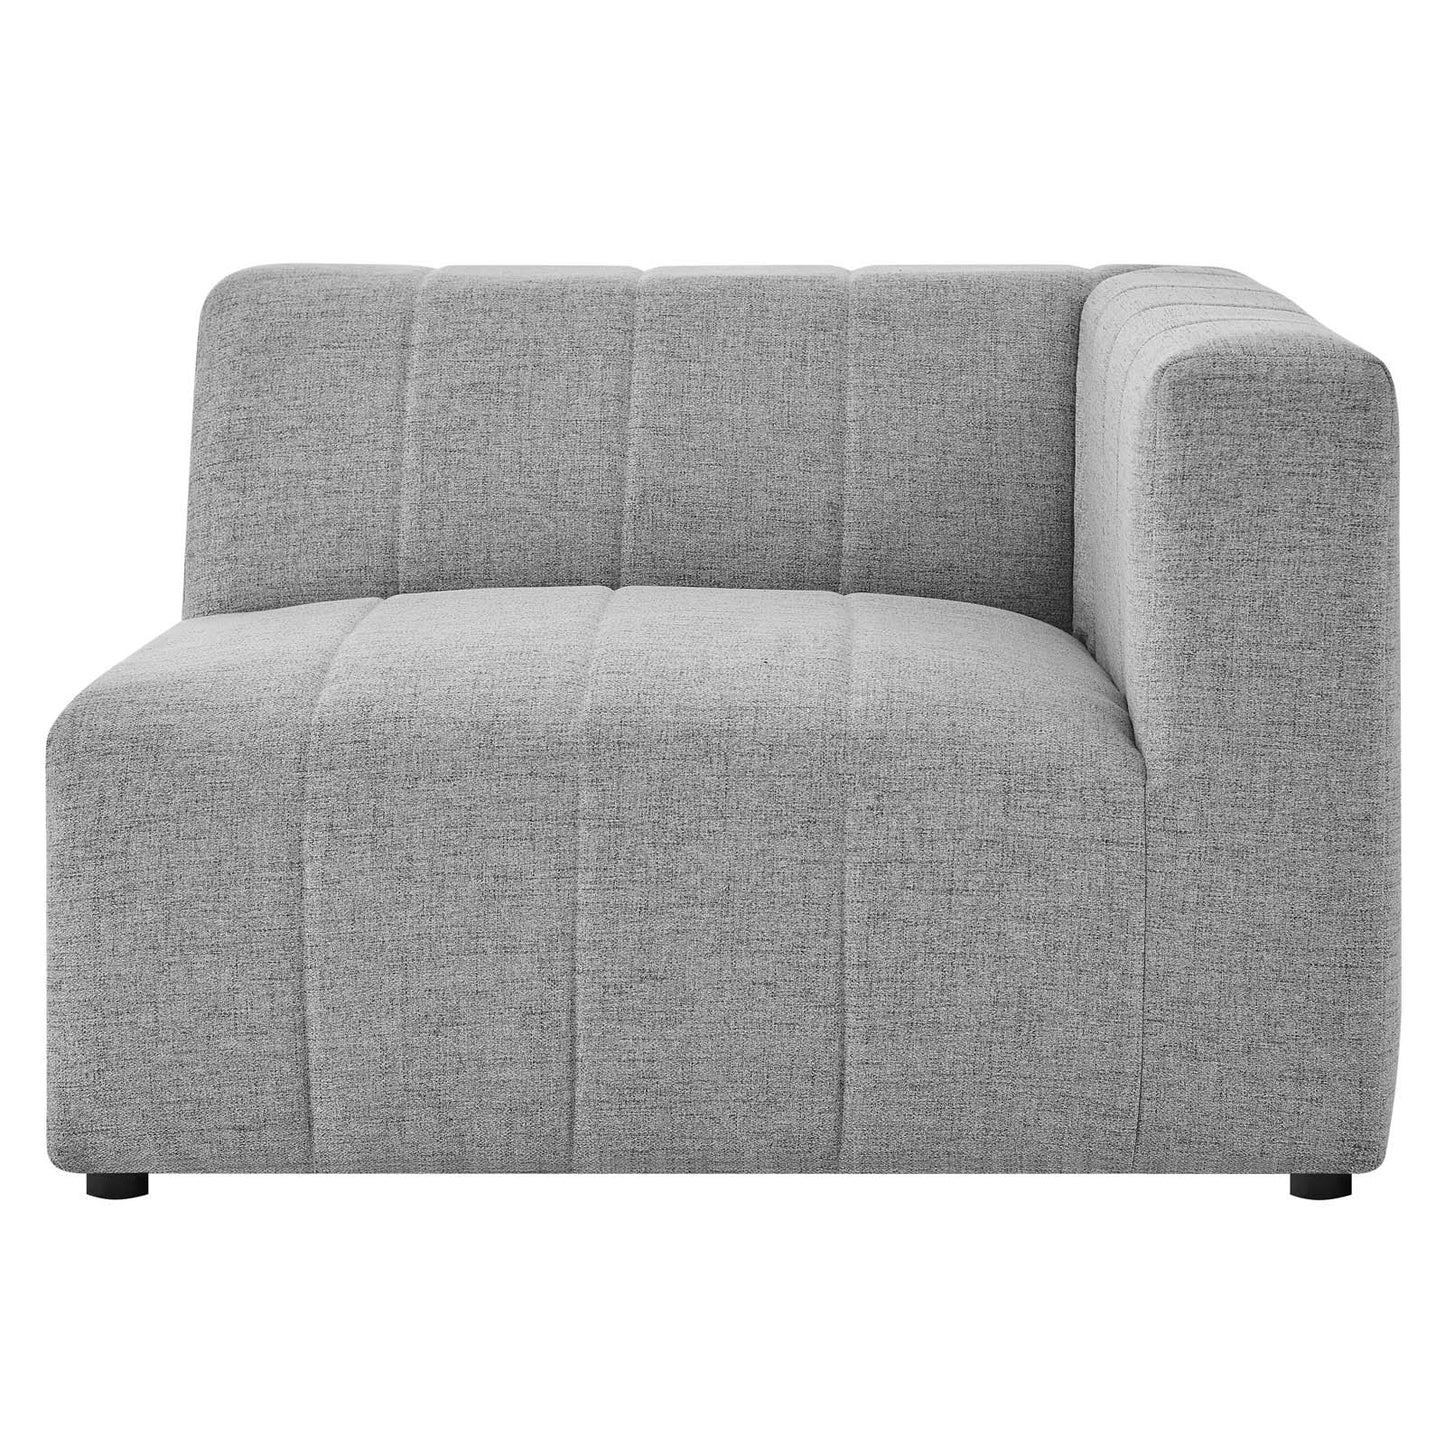 Bartlett Upholstered Fabric 4-Piece Sectional Sofa Light Gray EEI-4518-LGR